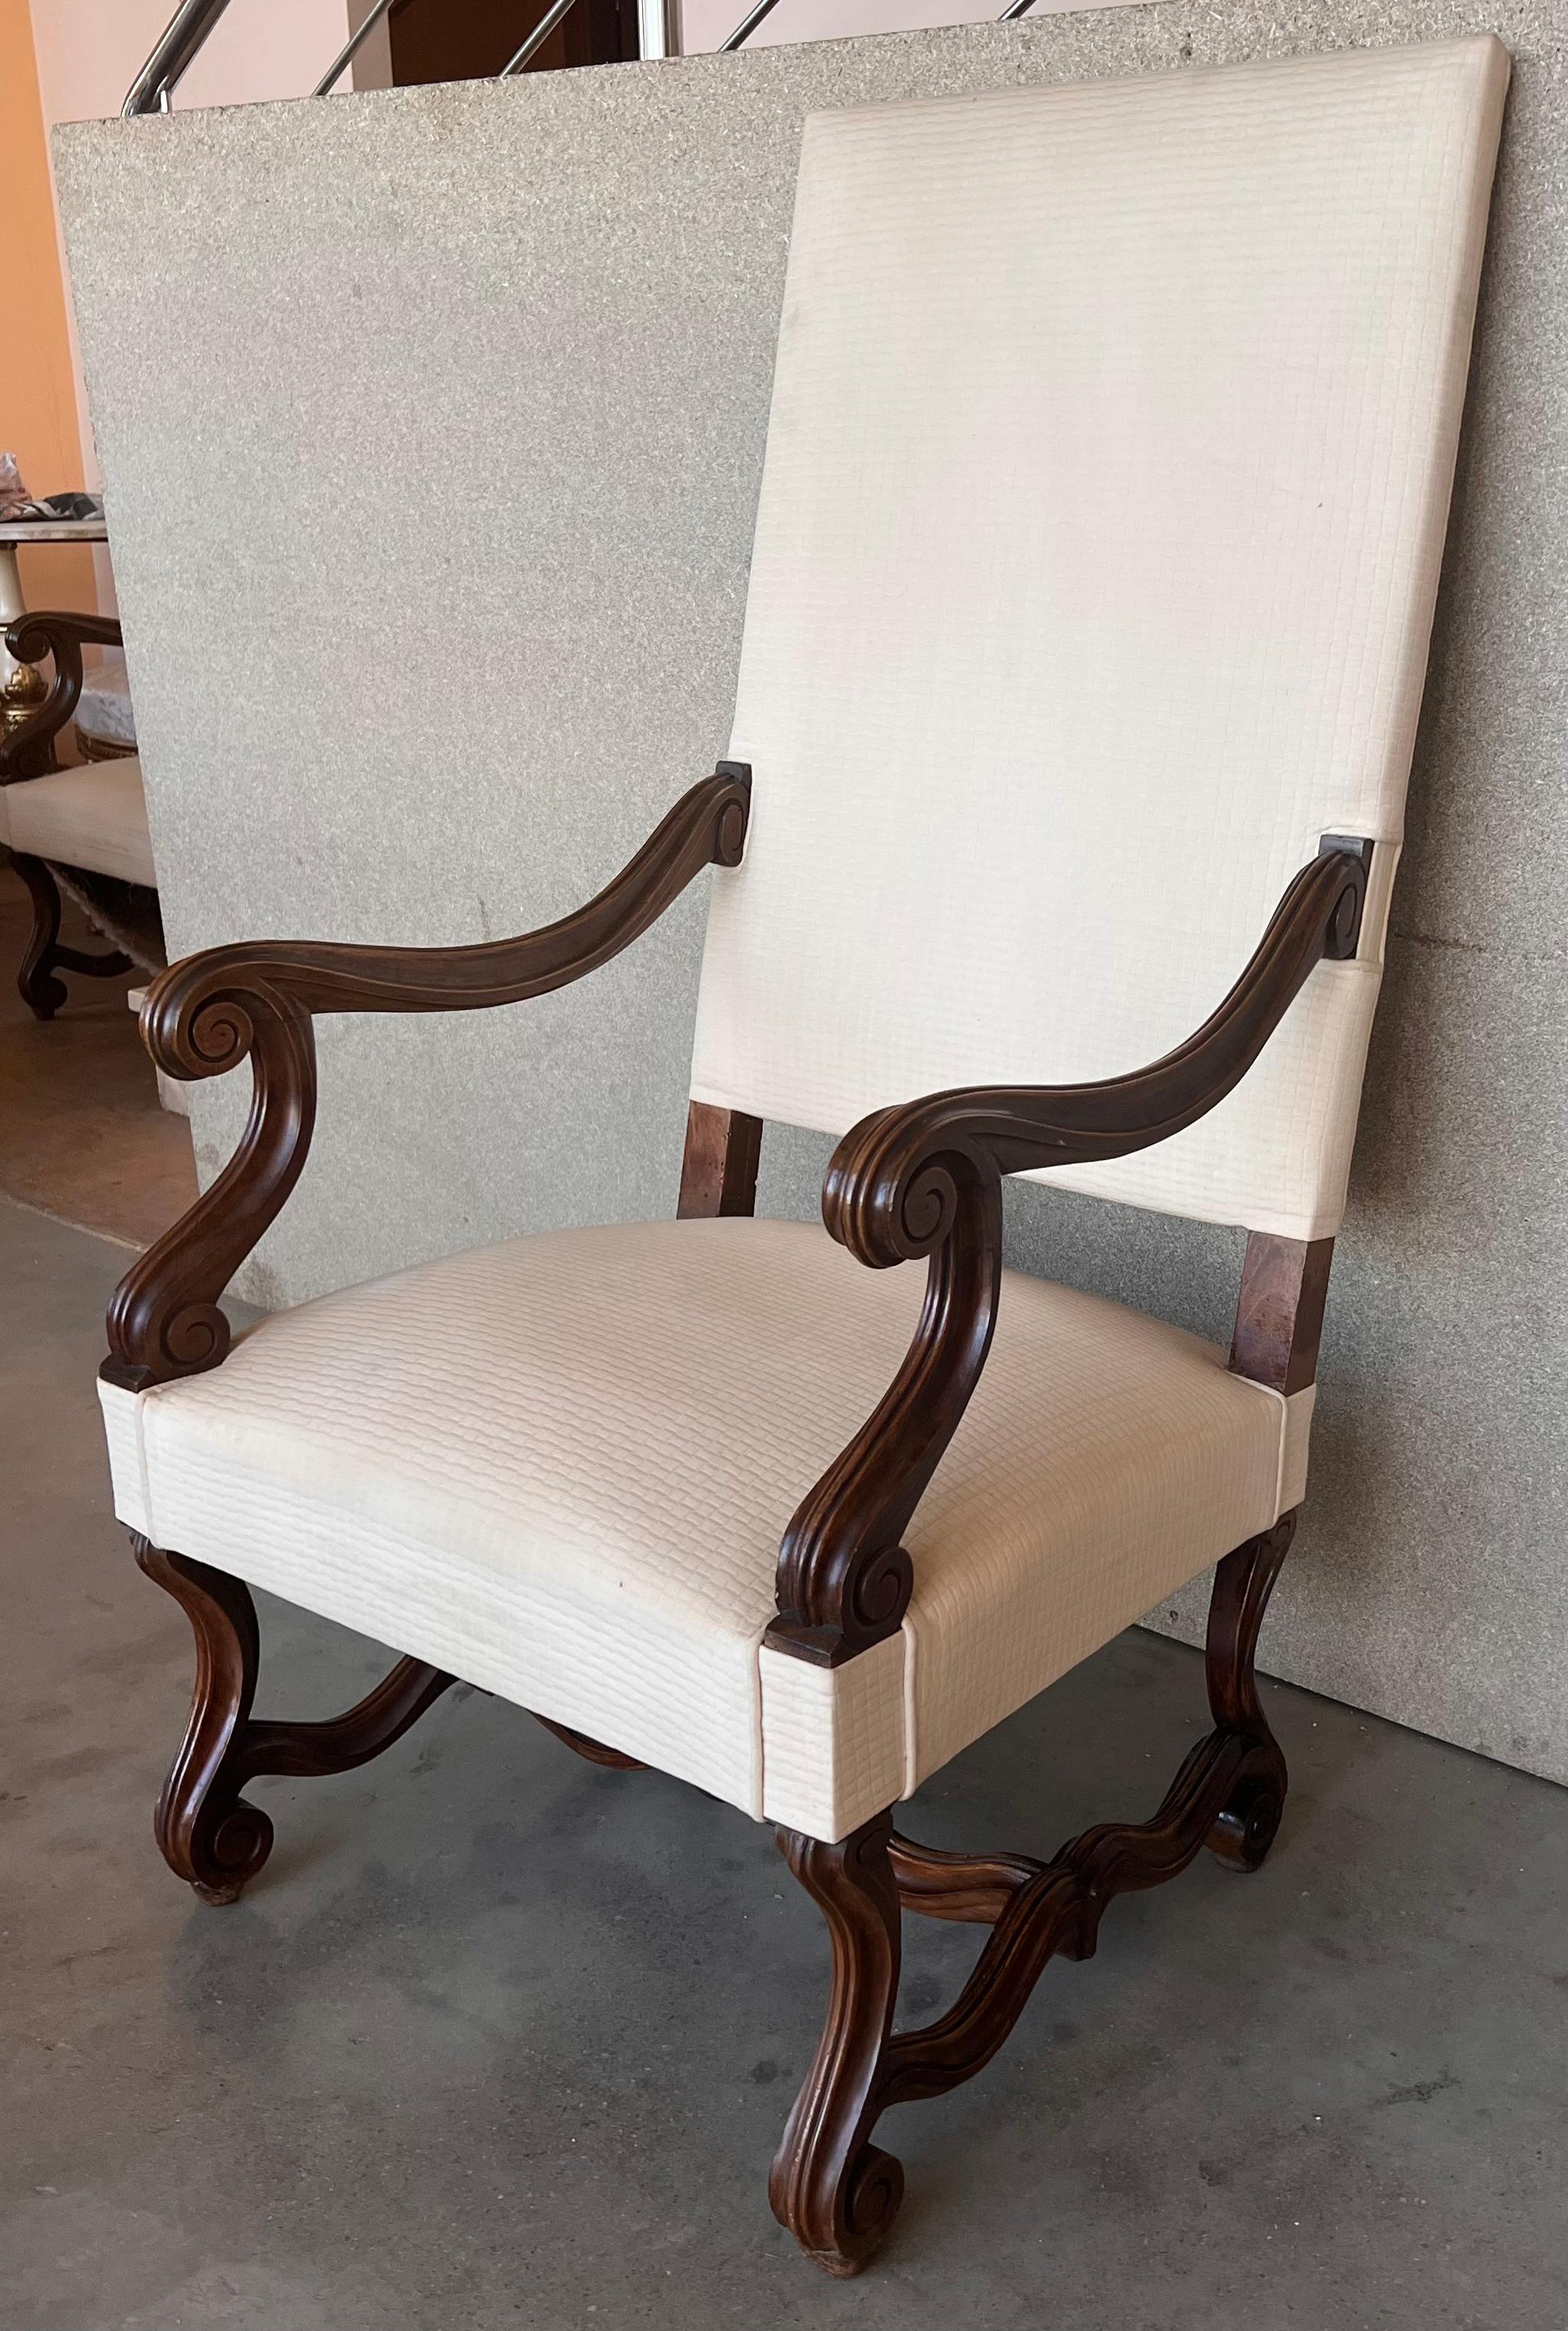 Paire de fauteuils sculptés de style Louis XVI, Espagne, années 1900.
Bon état ancien avec quelques petites marques d'usage et d'âge.
Rembourré par le dernier propriétaire avec un tissu de haute qualité, il y a 20/25 ans.

Mesure : hauteur au